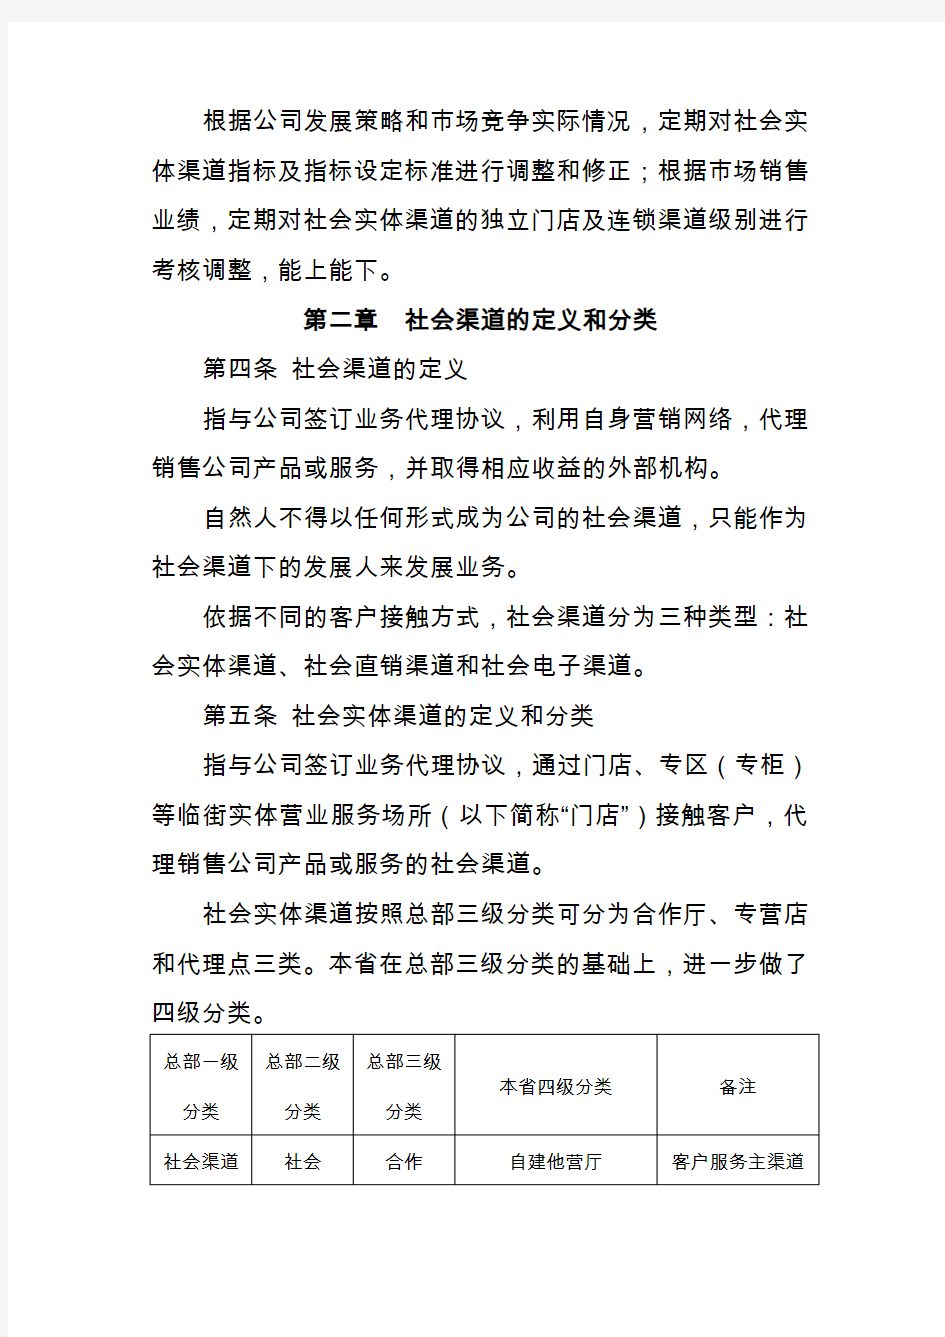 中国联通社会渠道分类分级管理办法